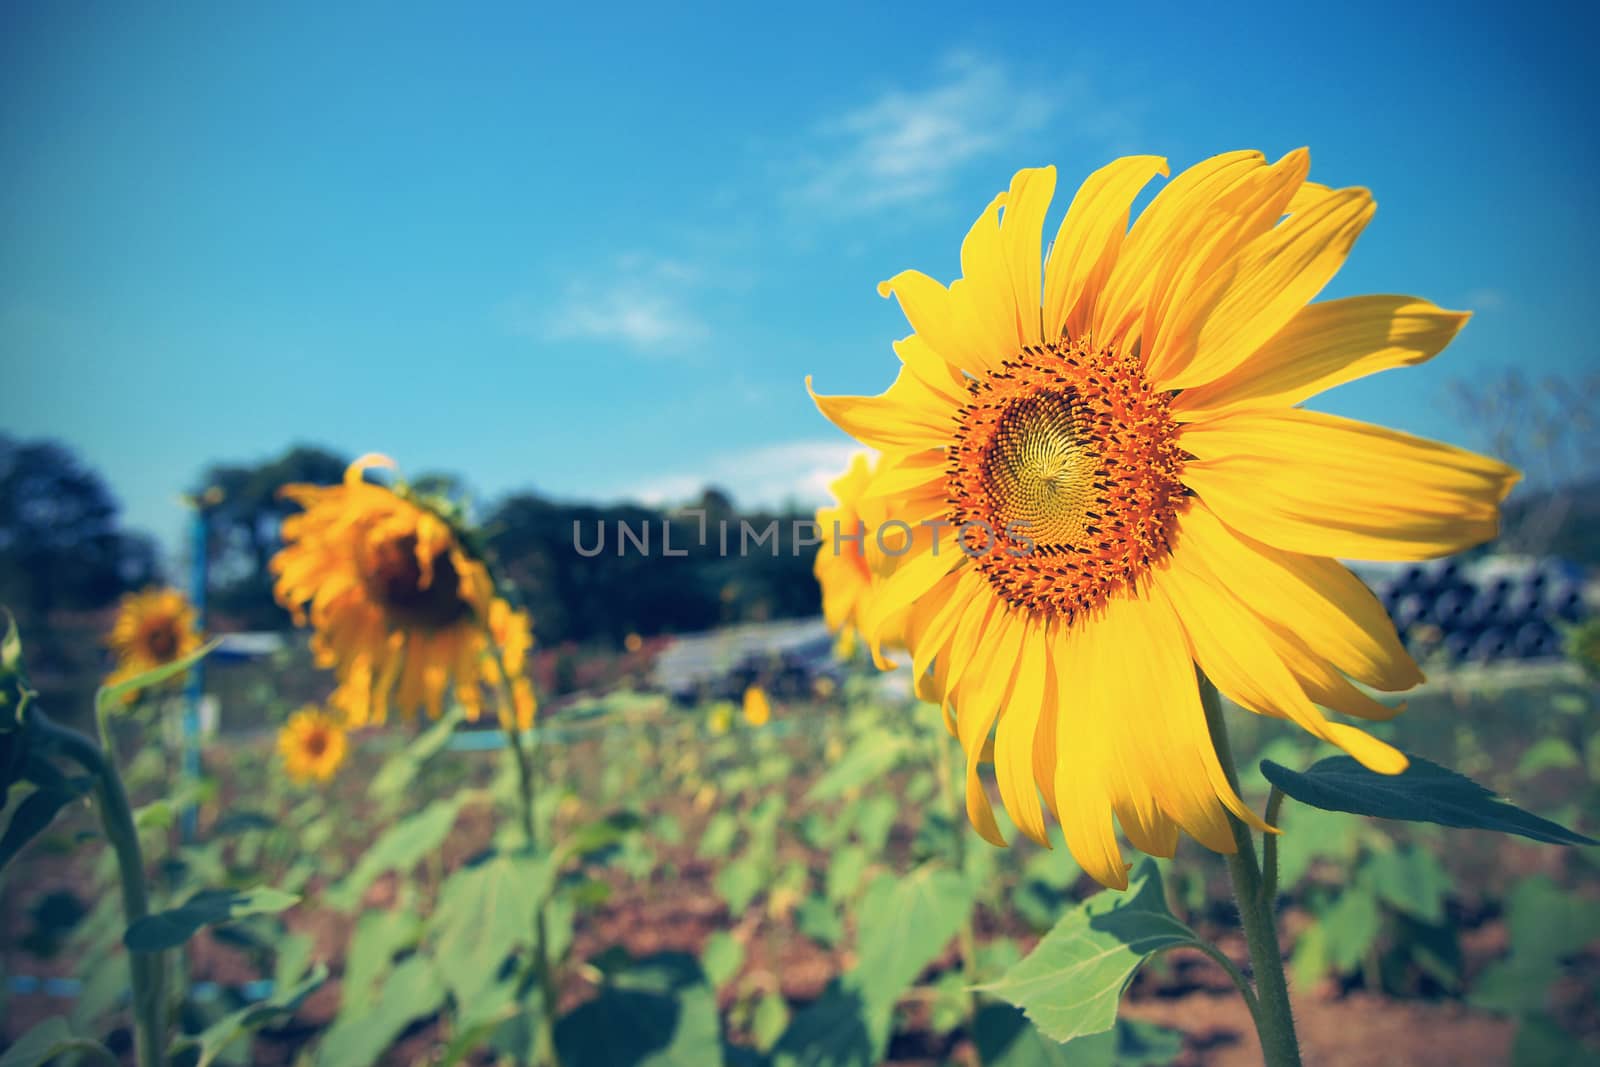 Vintage Sunflower against blue sky by jakgree